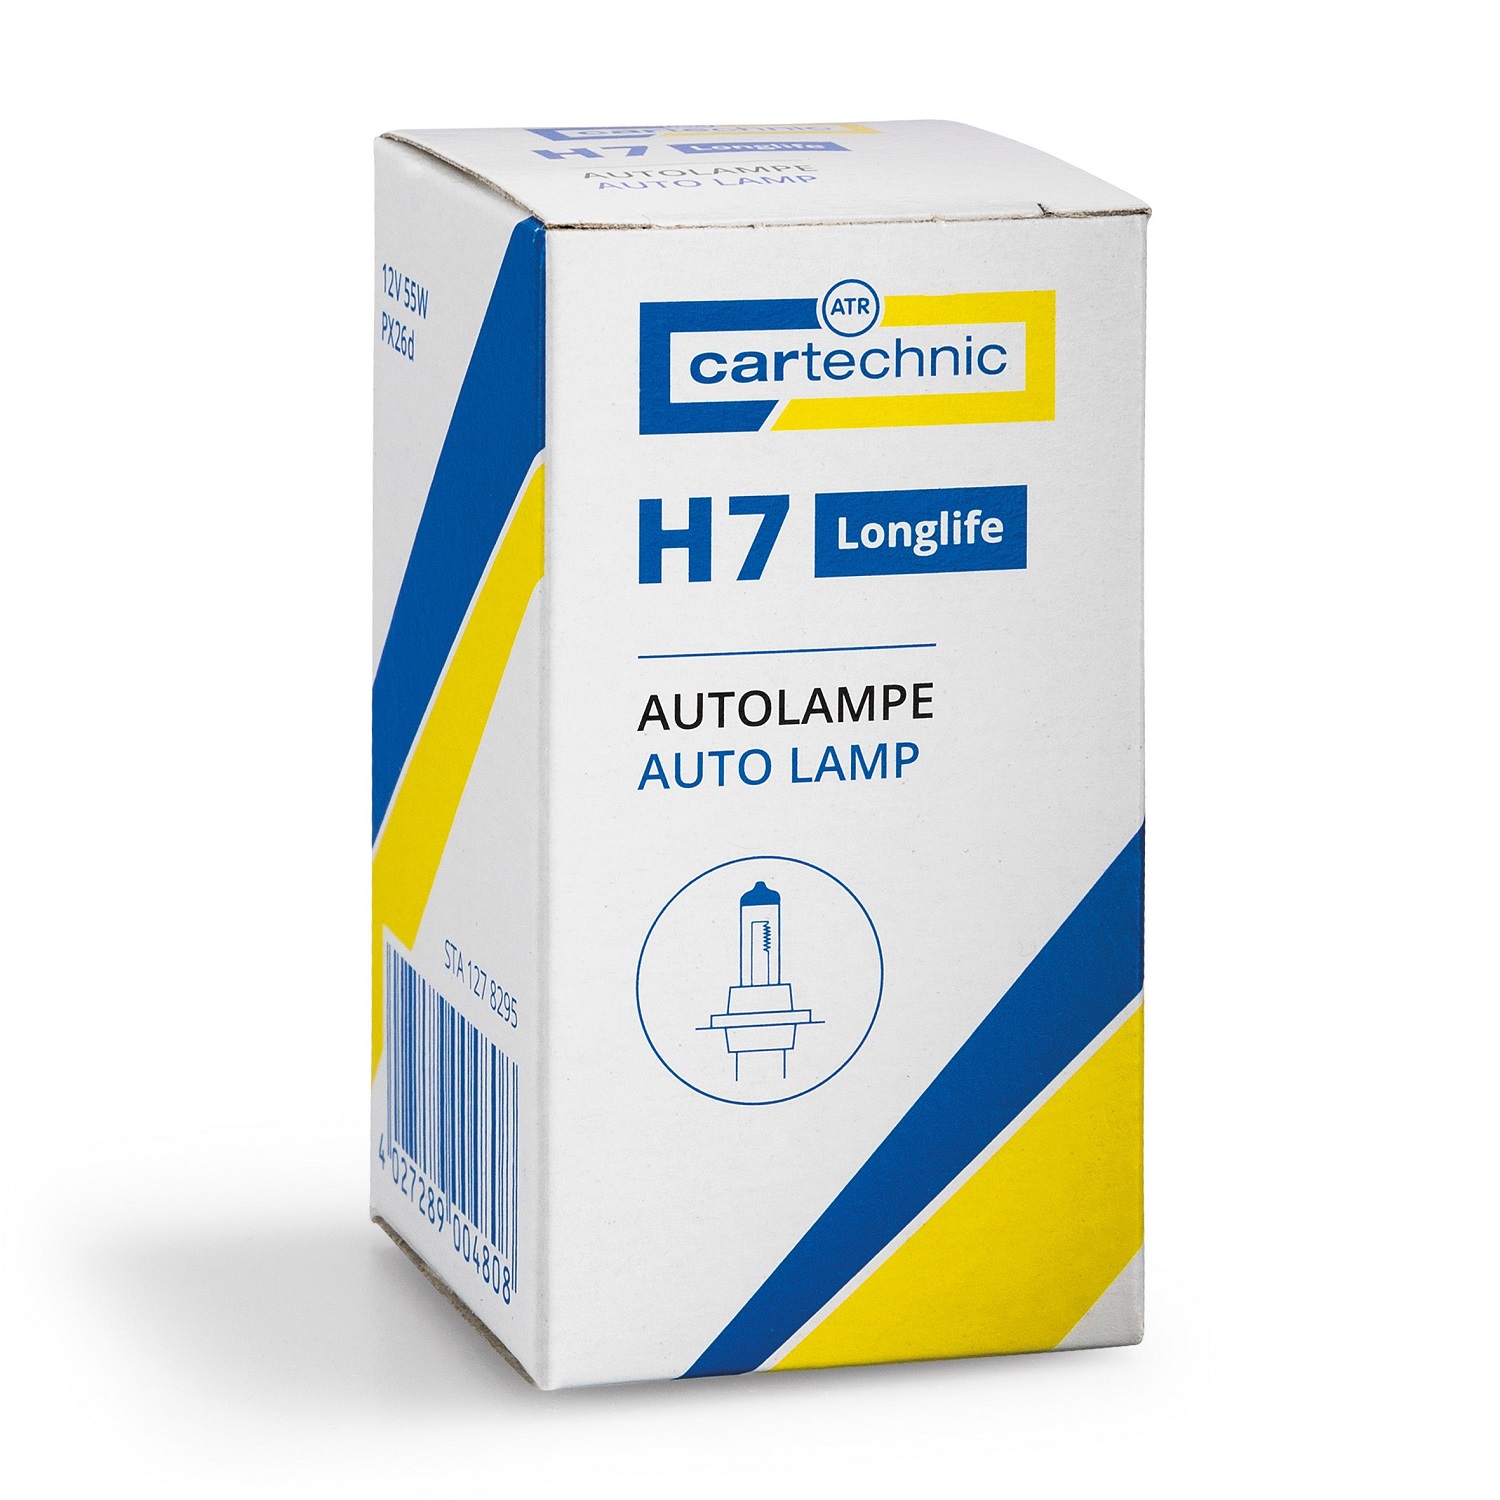 CARTECHNIC Headlight bulb H7 LONGLIFE 12 Volt 55 Watt 40 27289 00480 8